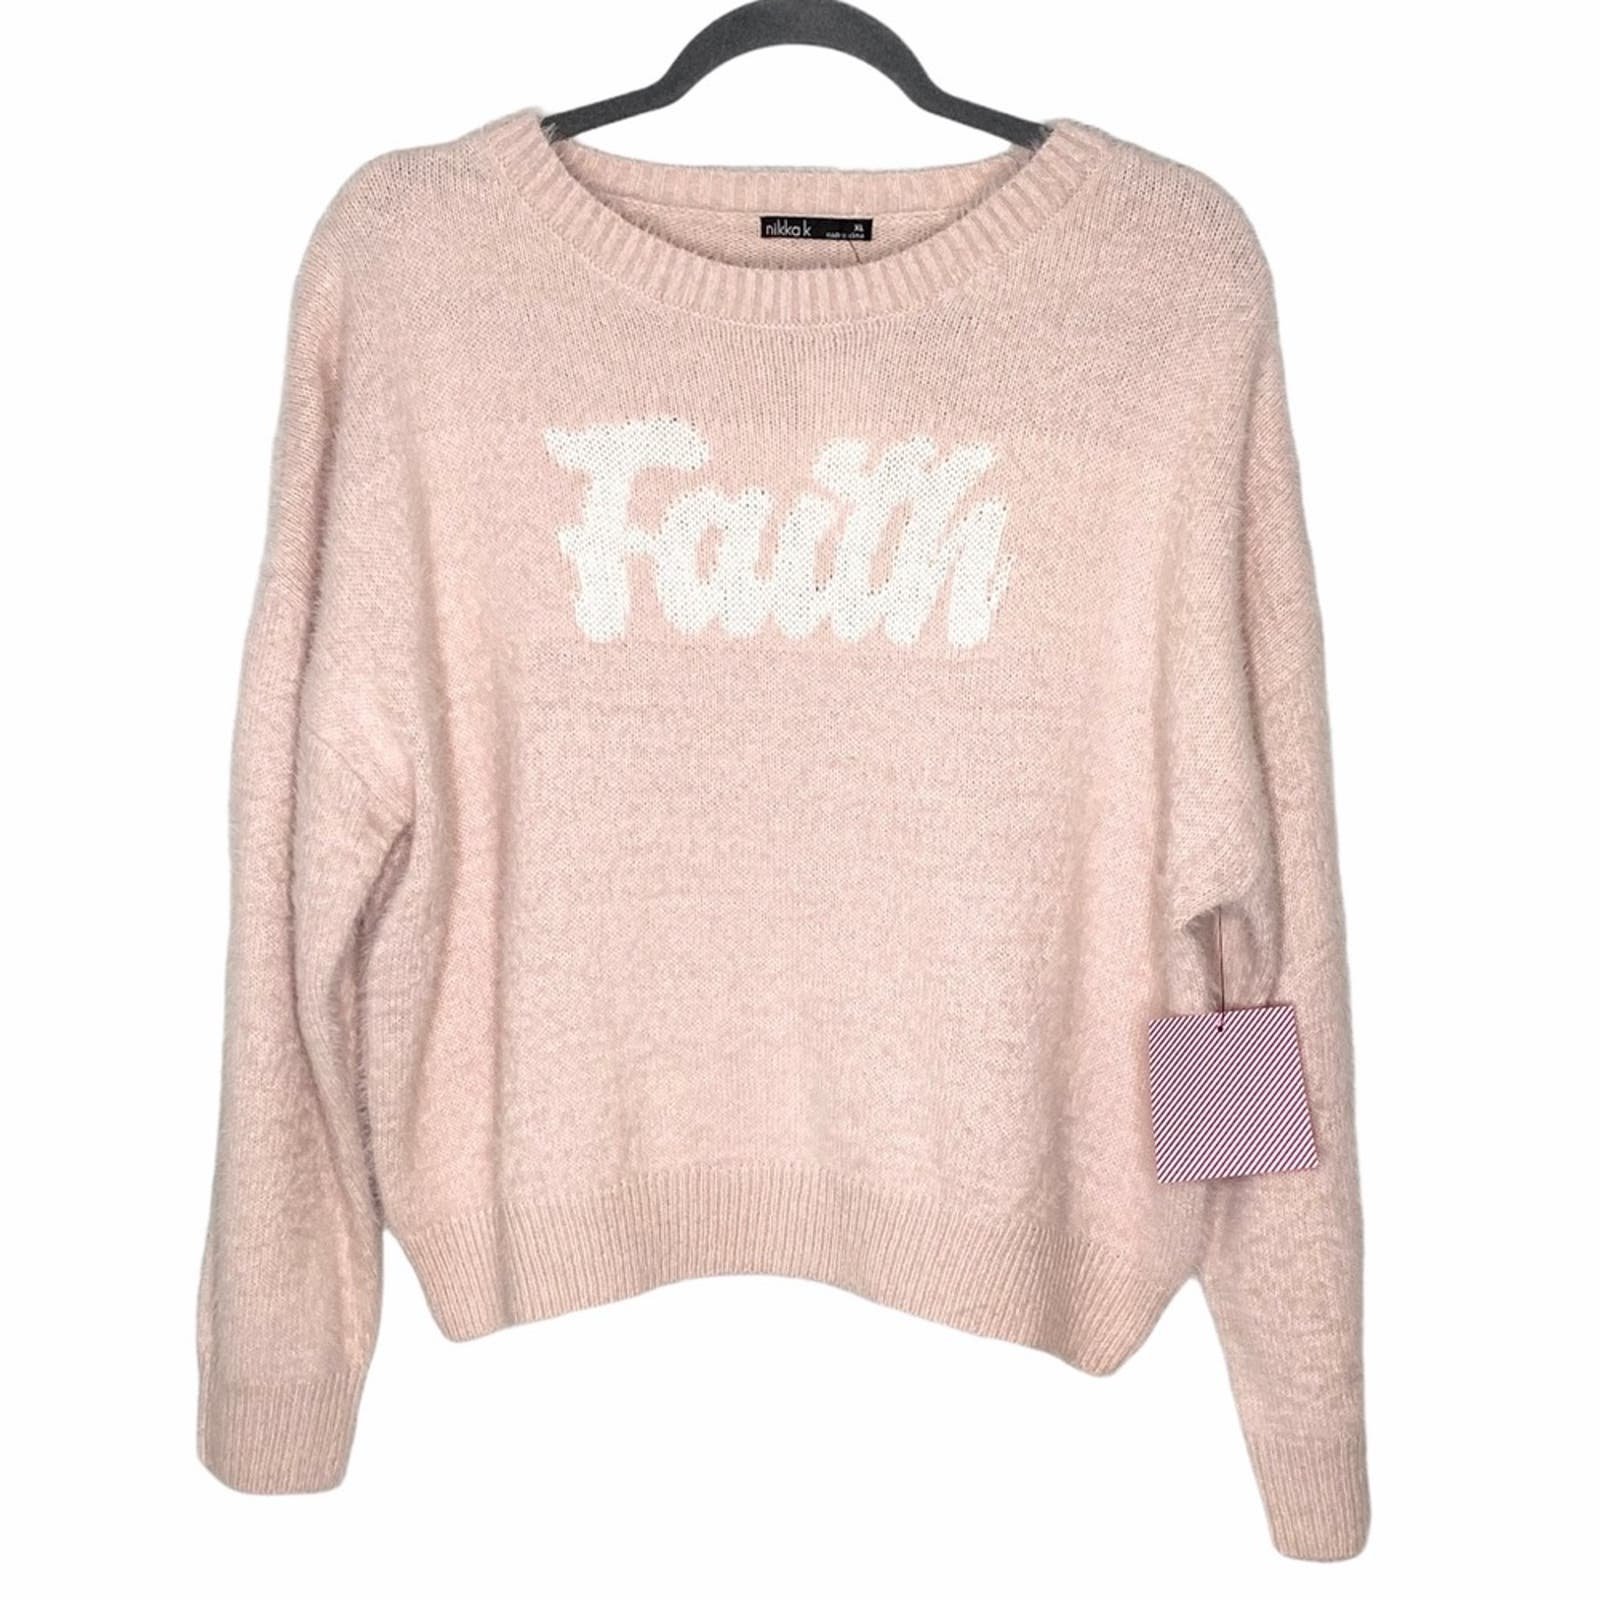 Affordable Women´s NWT Nikka k “faith” fuzzy blush